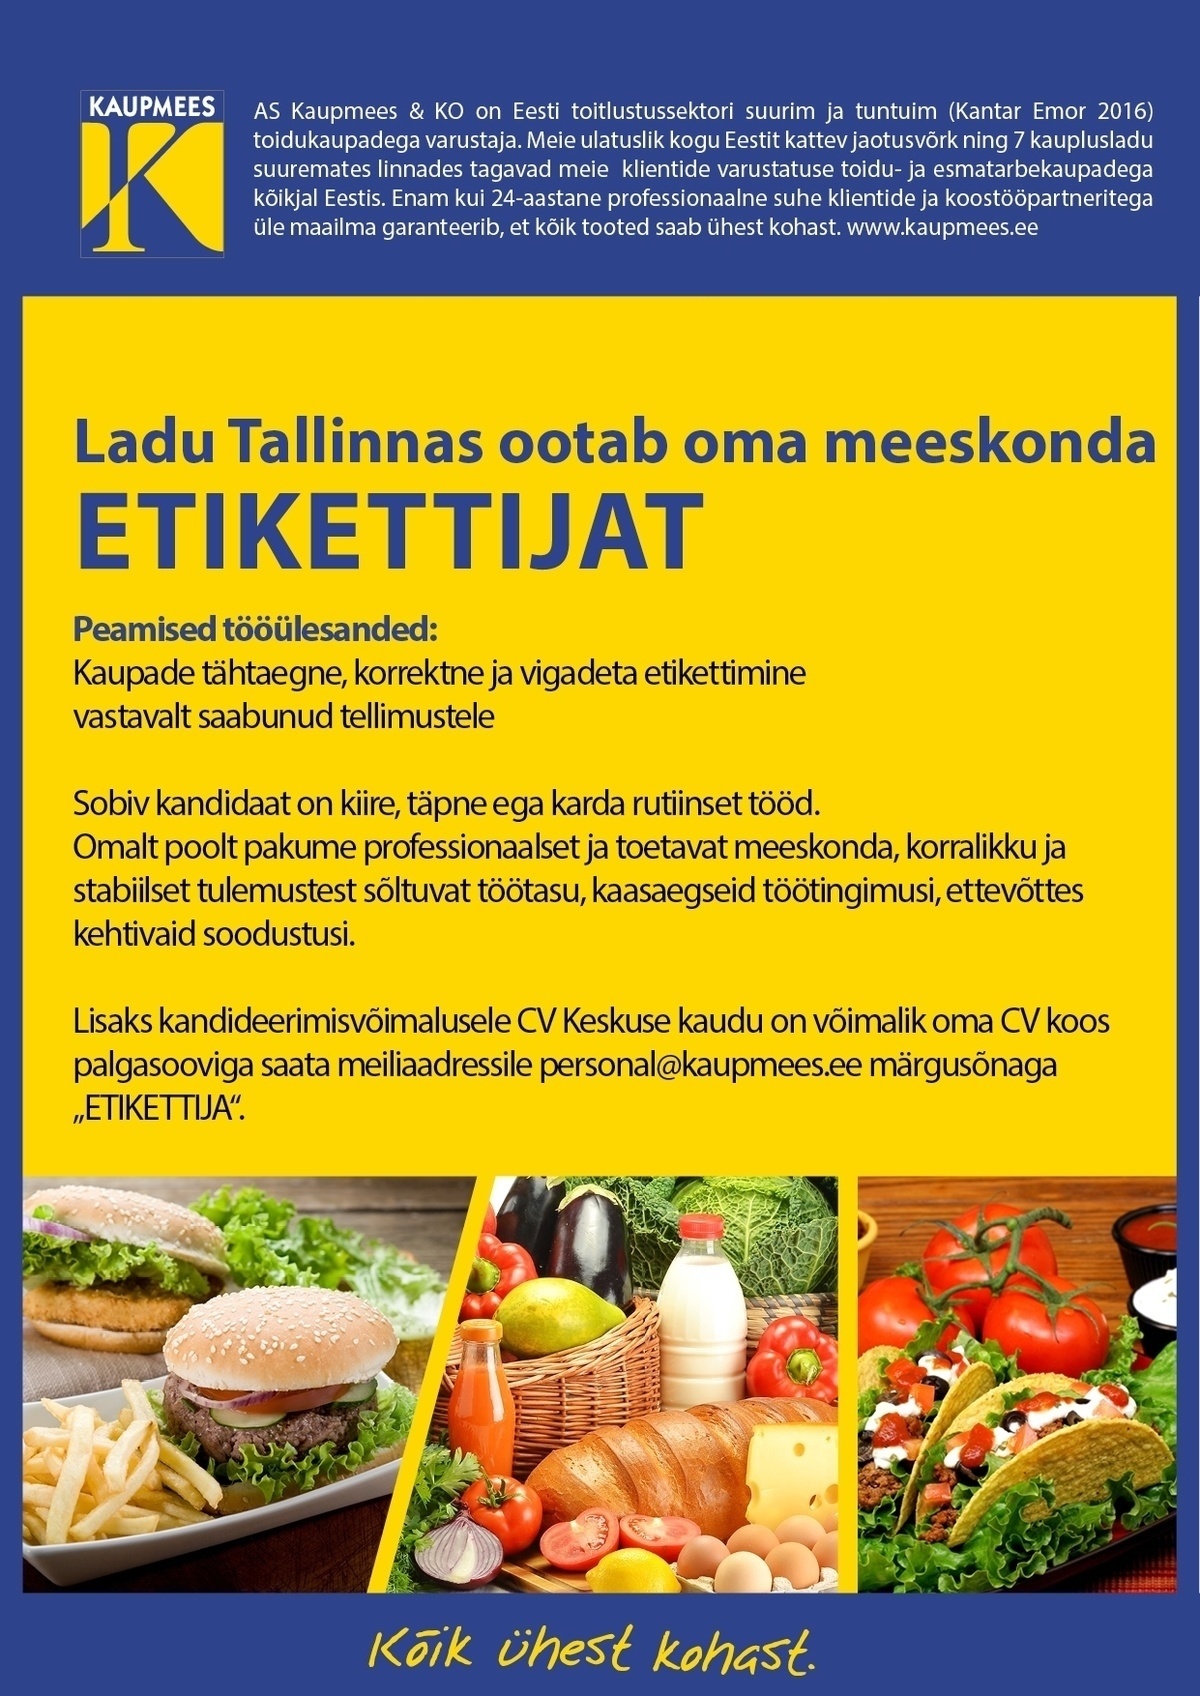 Kaupmees & Ko AS Etikettija Tallinna lattu